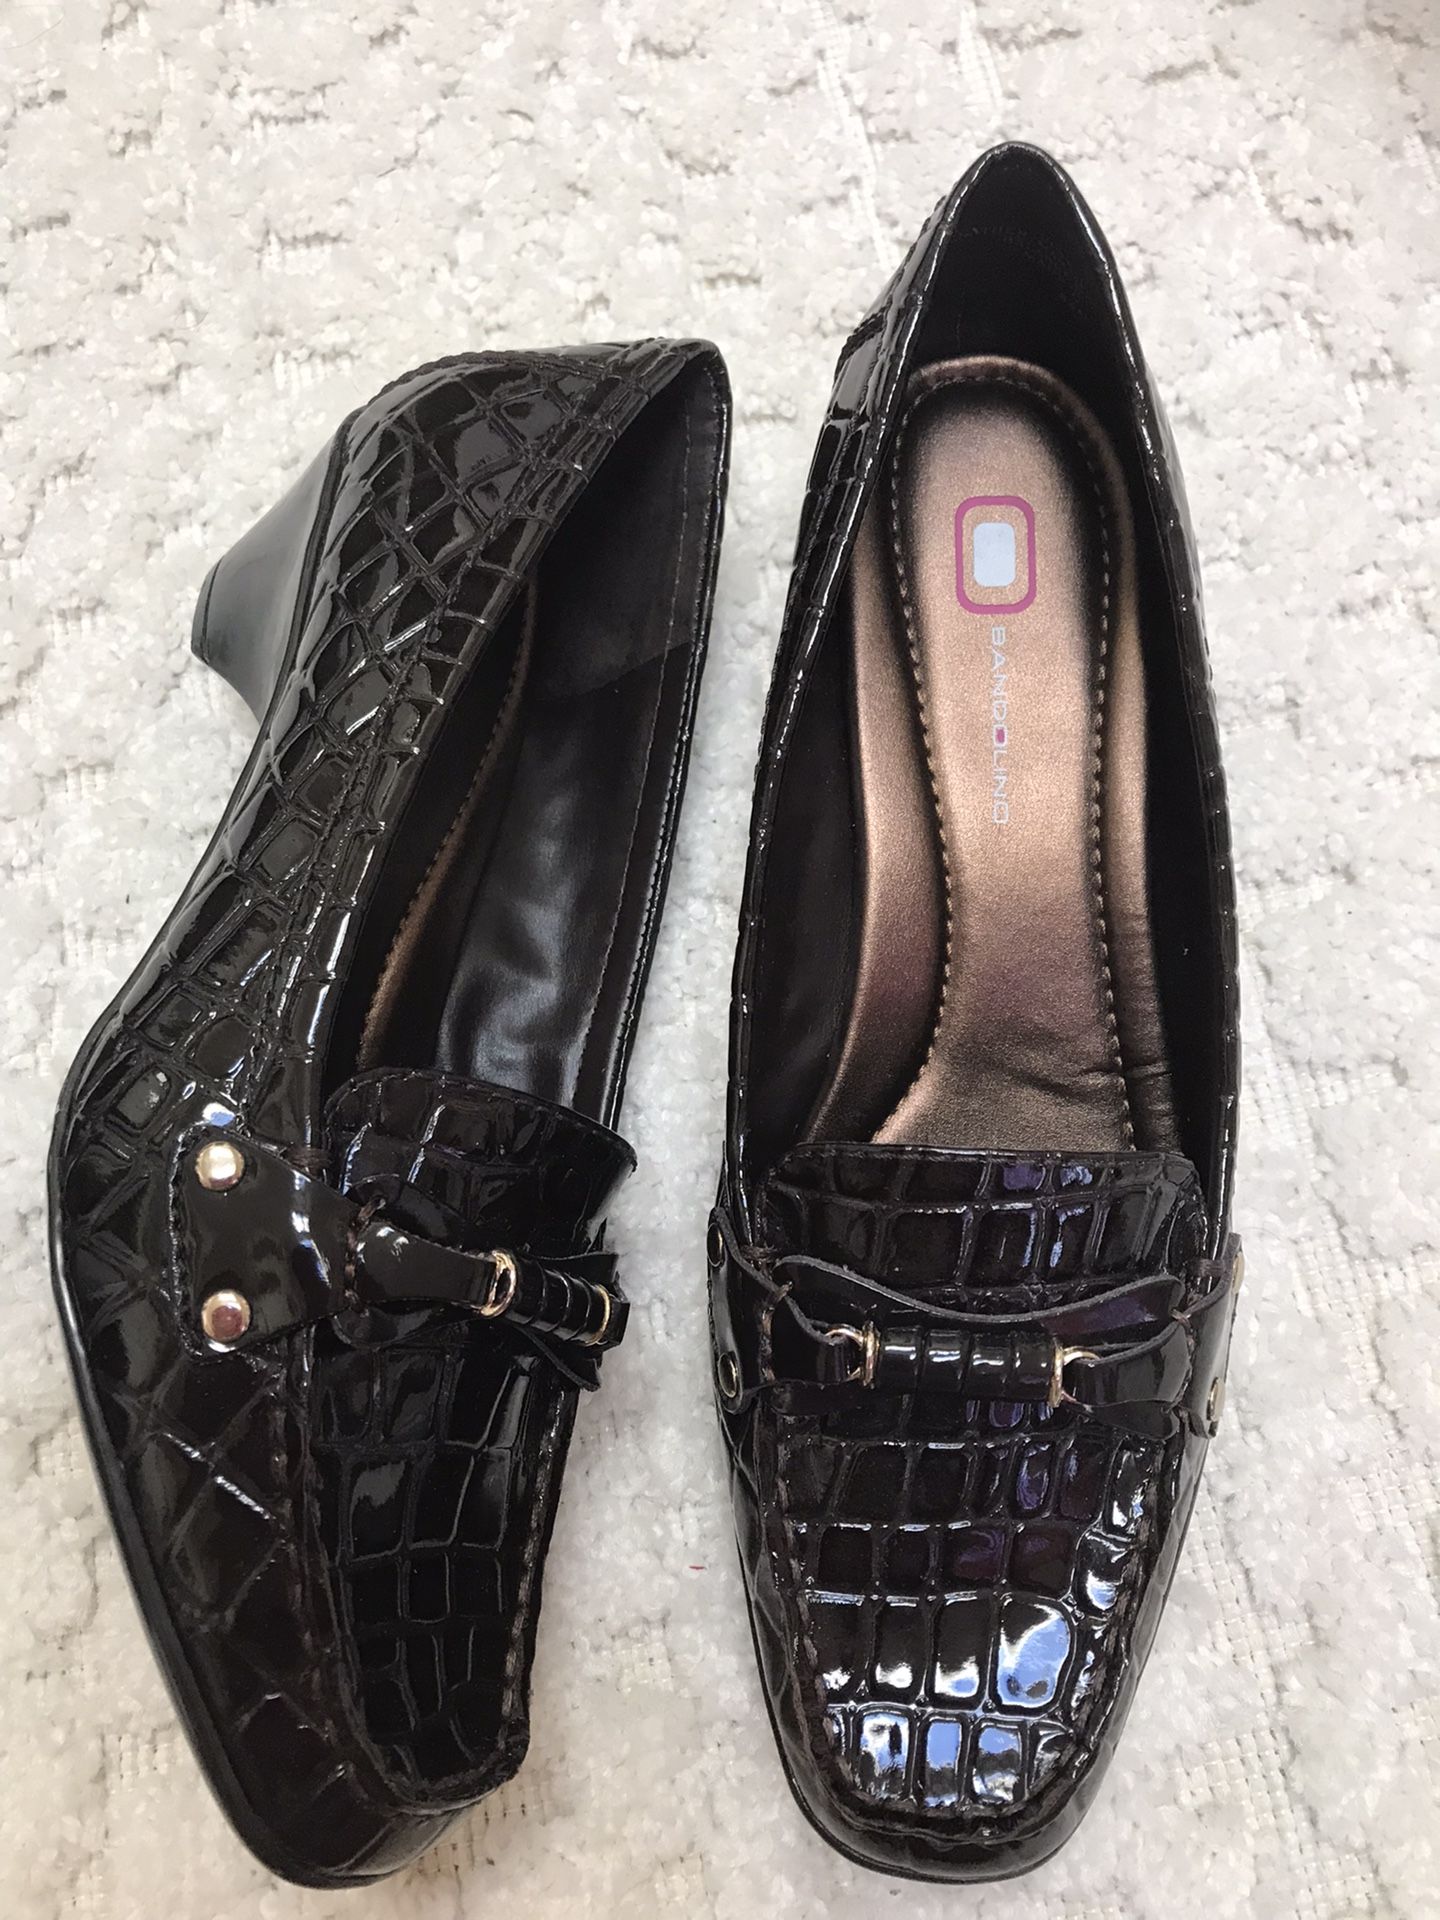 NEW Bandolino Heeled Shoe 8.5 M